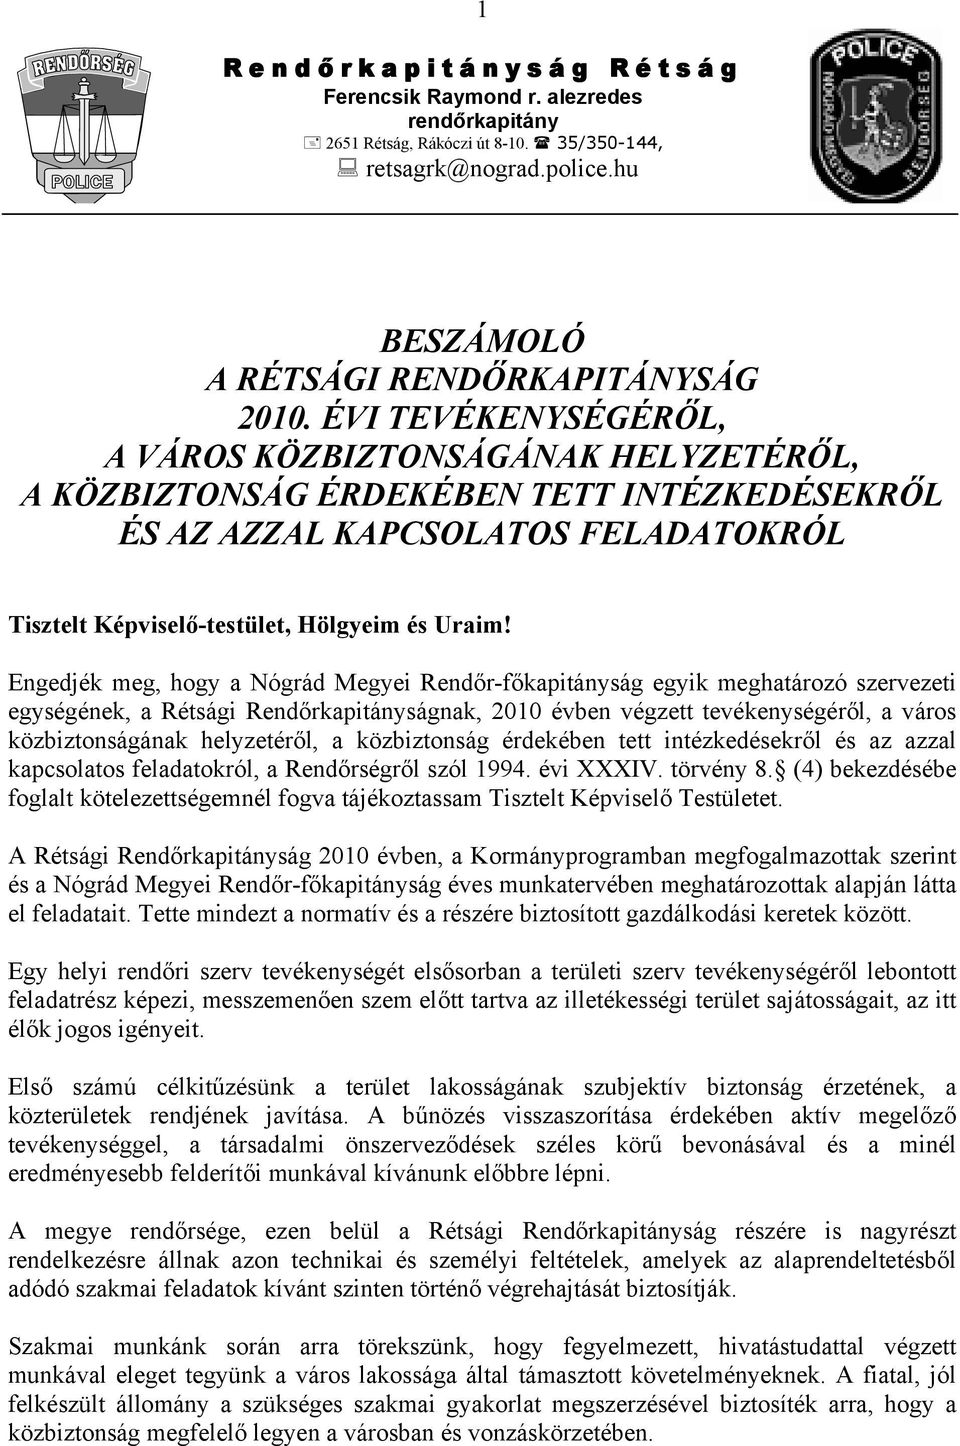 Engedjék meg, hogy a Nógrád Megyei Rendőr-főkapitányság egyik meghatározó szervezeti egységének, a Rétsági Rendőrkapitányságnak, 2010 évben végzett tevékenységéről, a város közbiztonságának